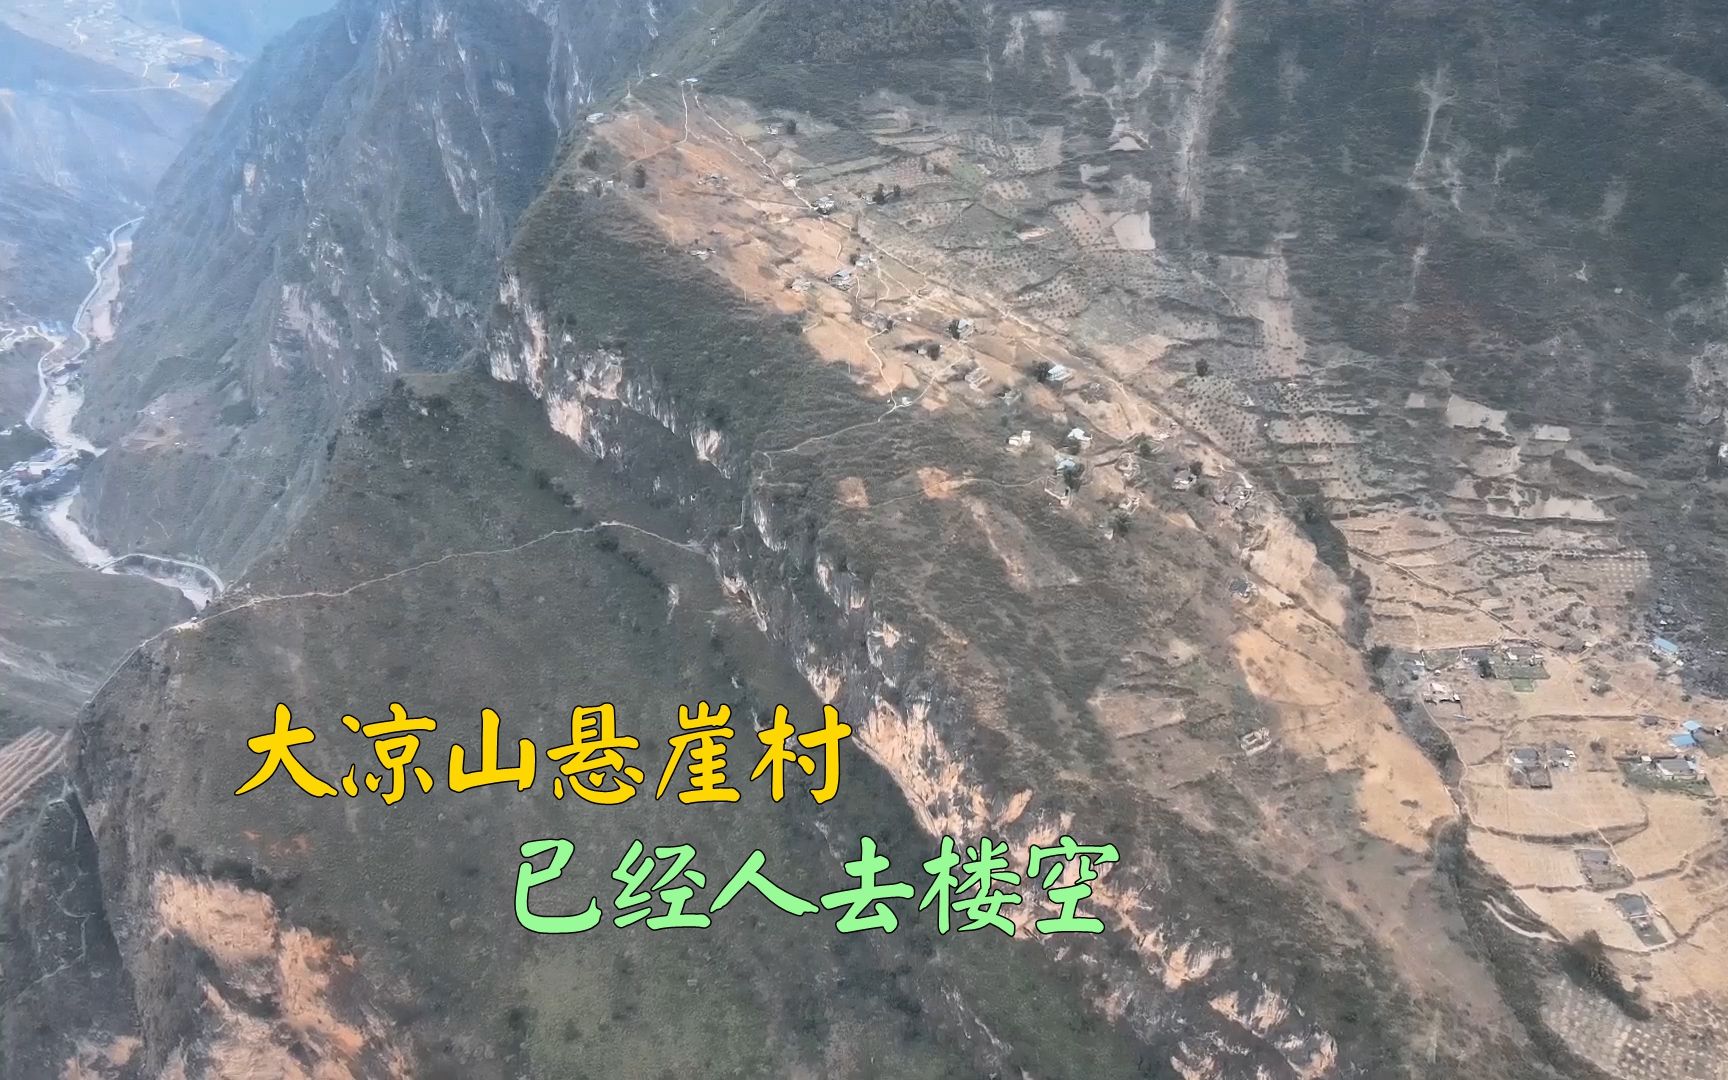 四川凉山悬崖村全貌图片